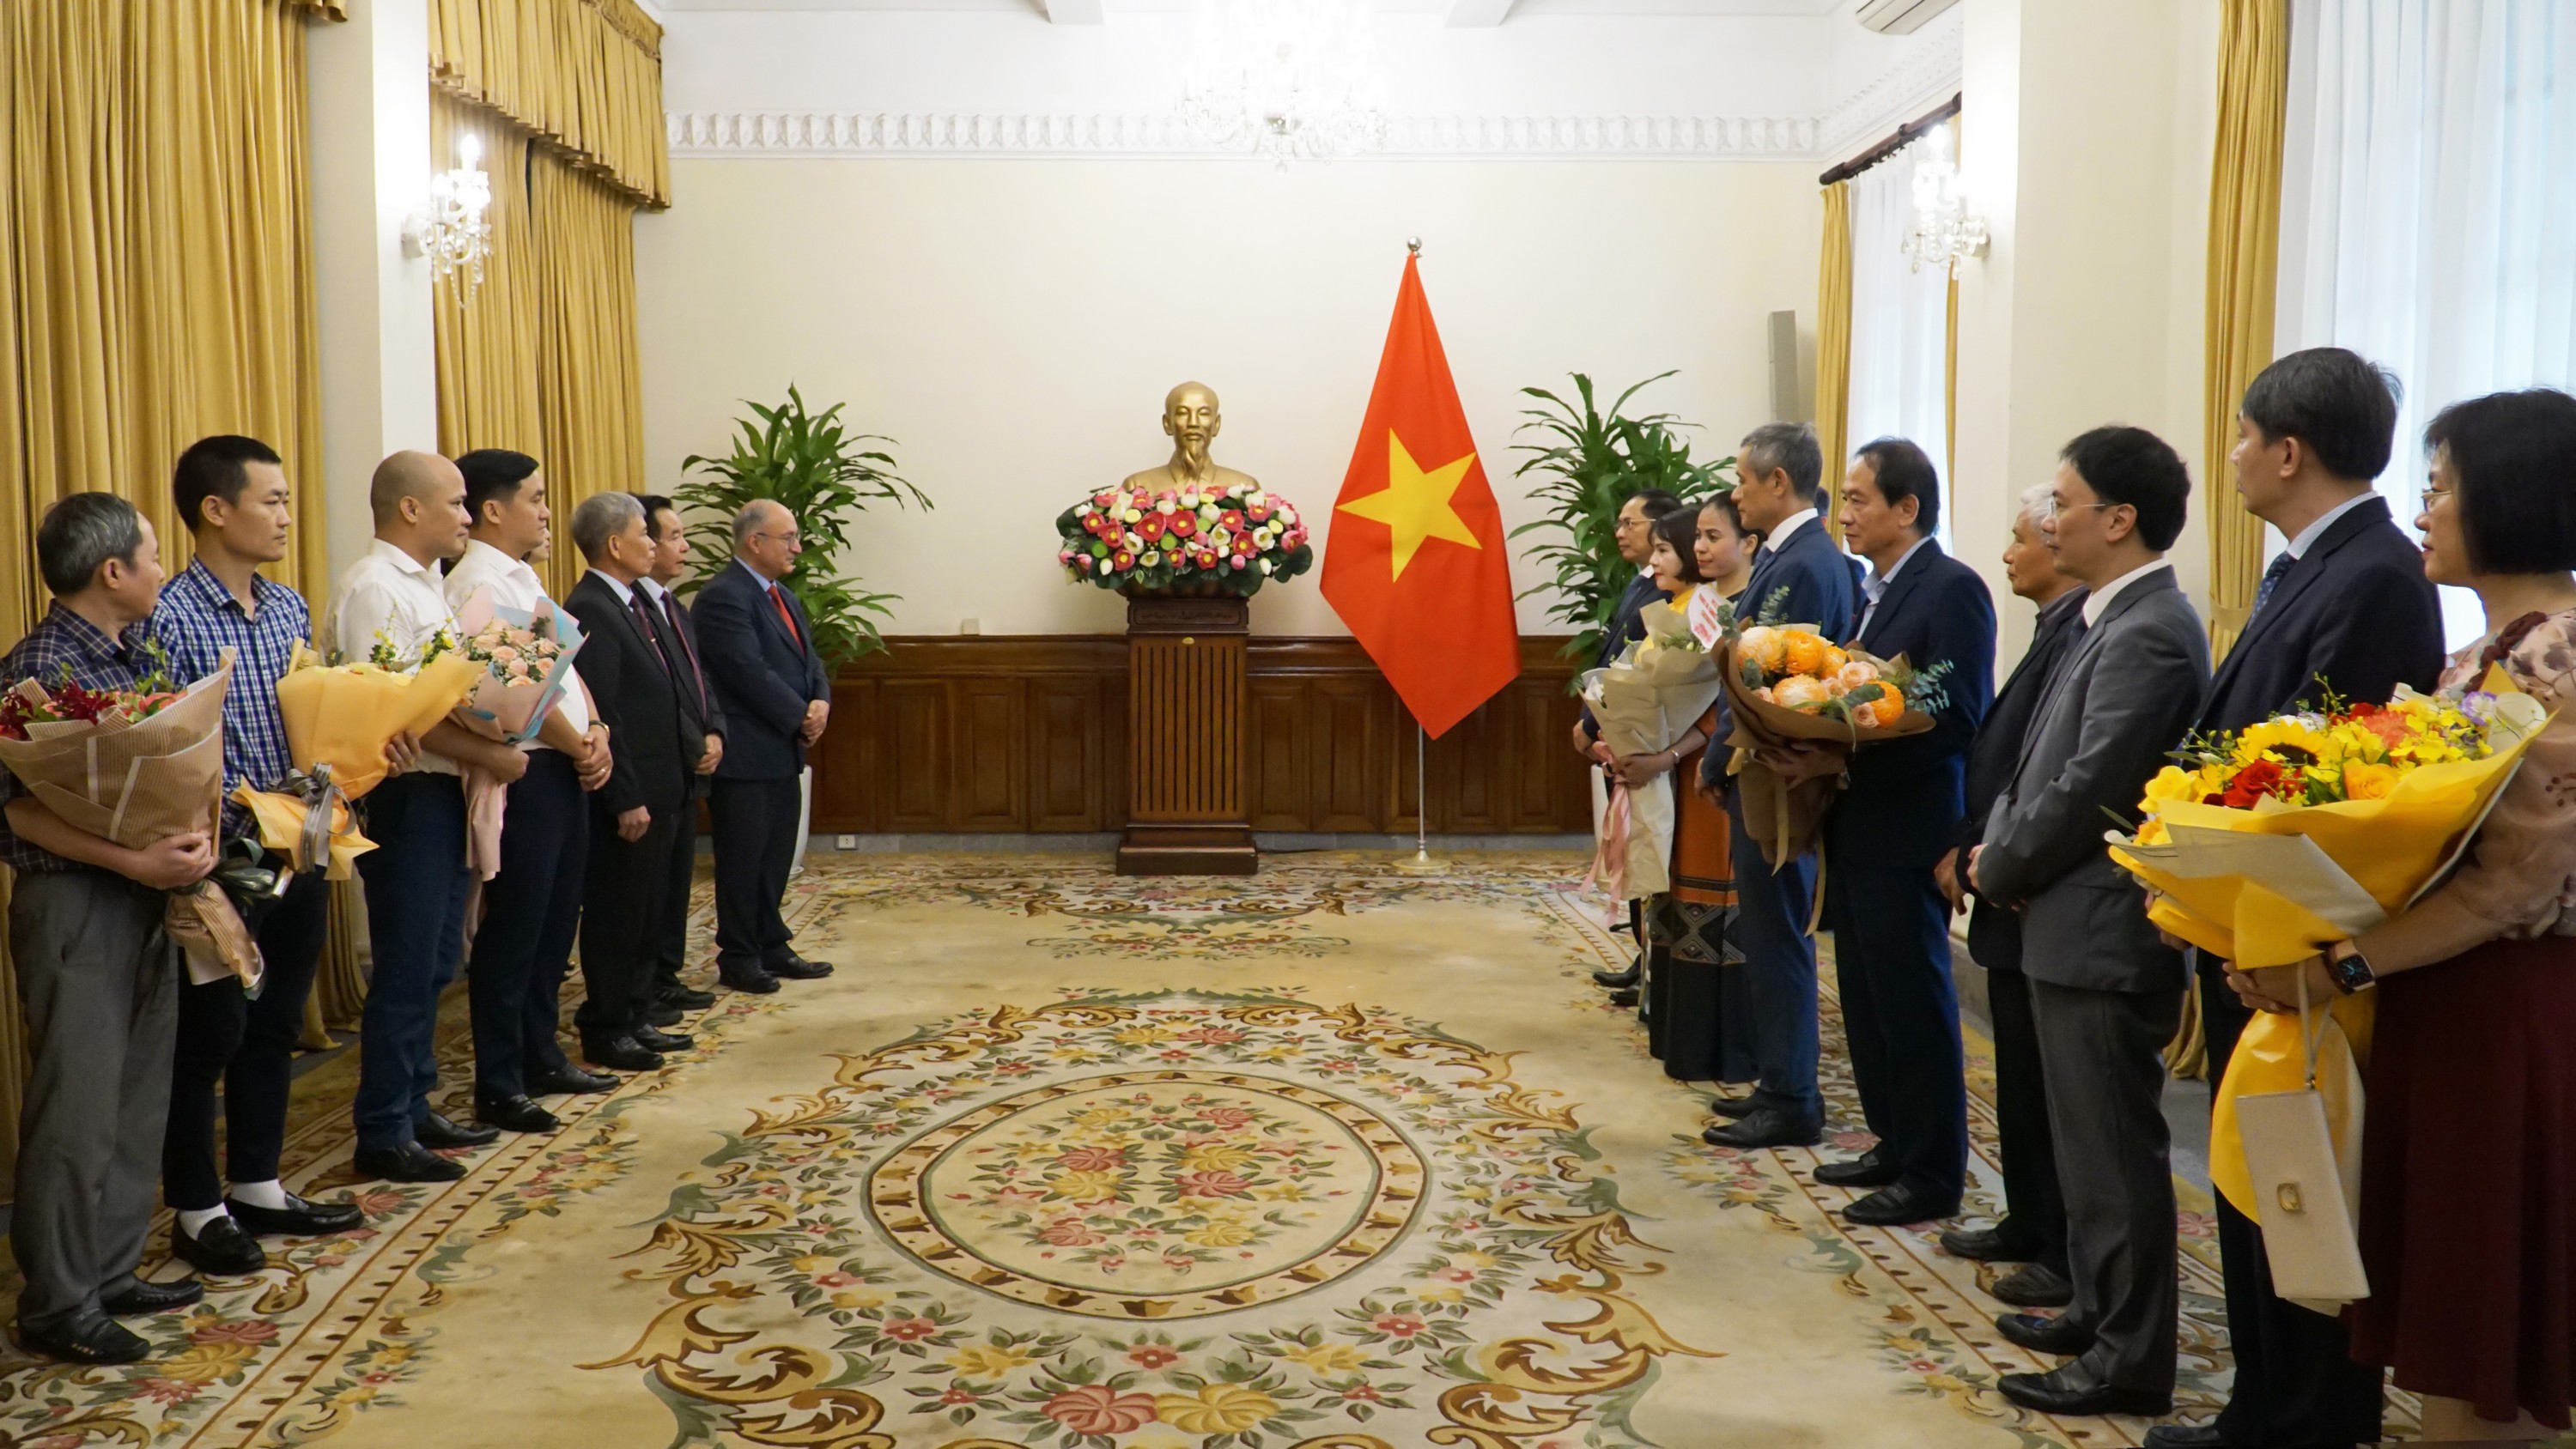 Tiến sỹ Kambiz Ghawami đón nhận Huân chương Hữu nghị của Chủ tịch nước CHXHVN Việt Nam